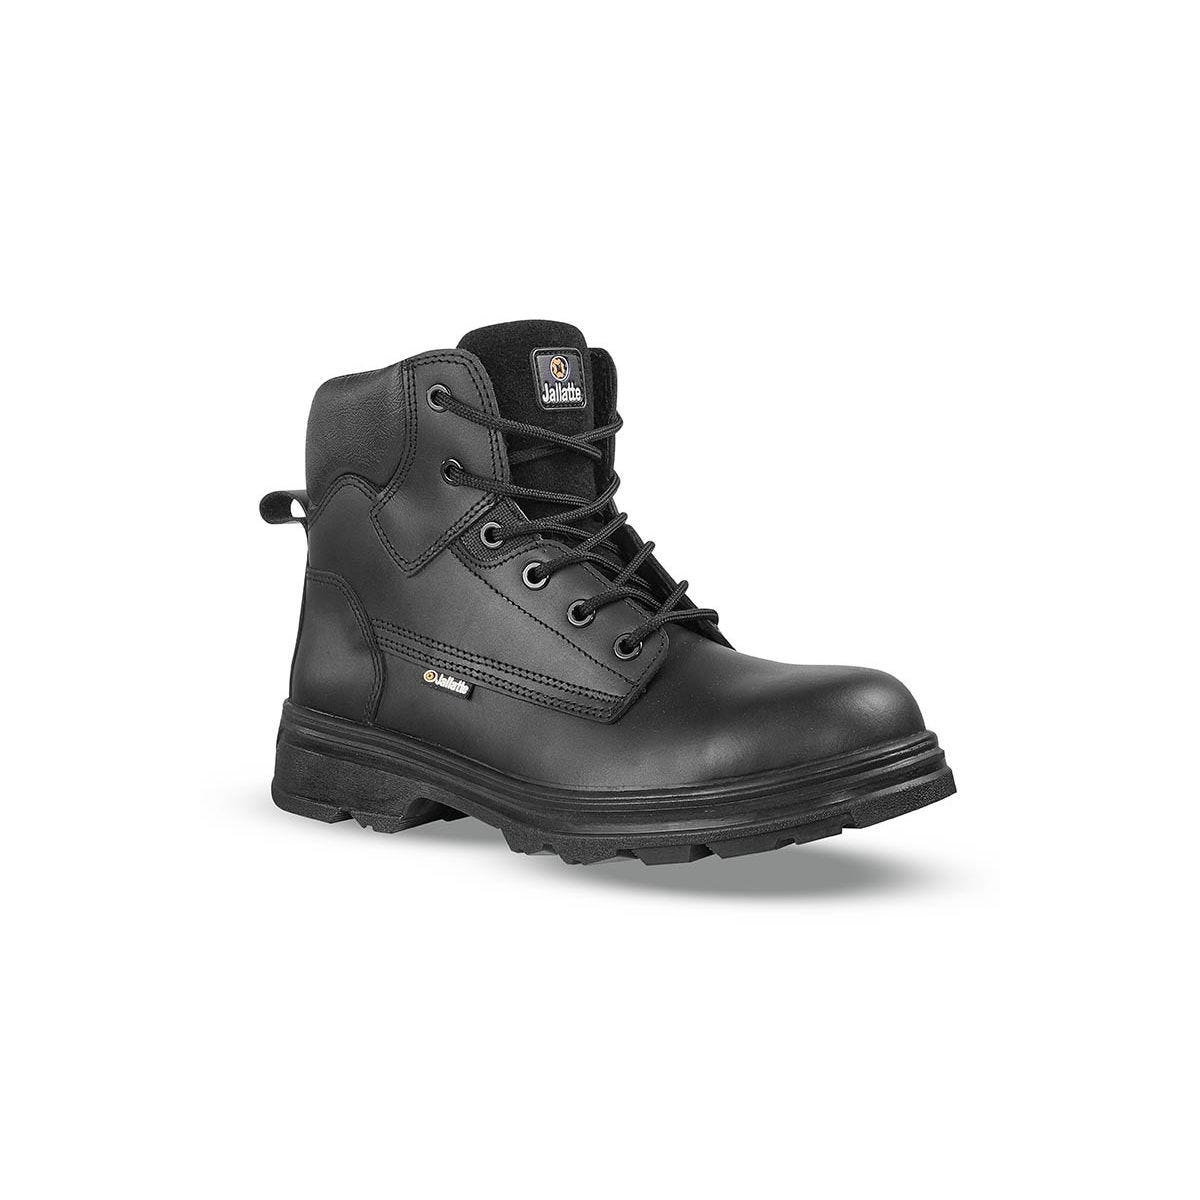 Chaussures de sécurité hautes JALGERAINT S3 - JALLATTE - Taille 35 0